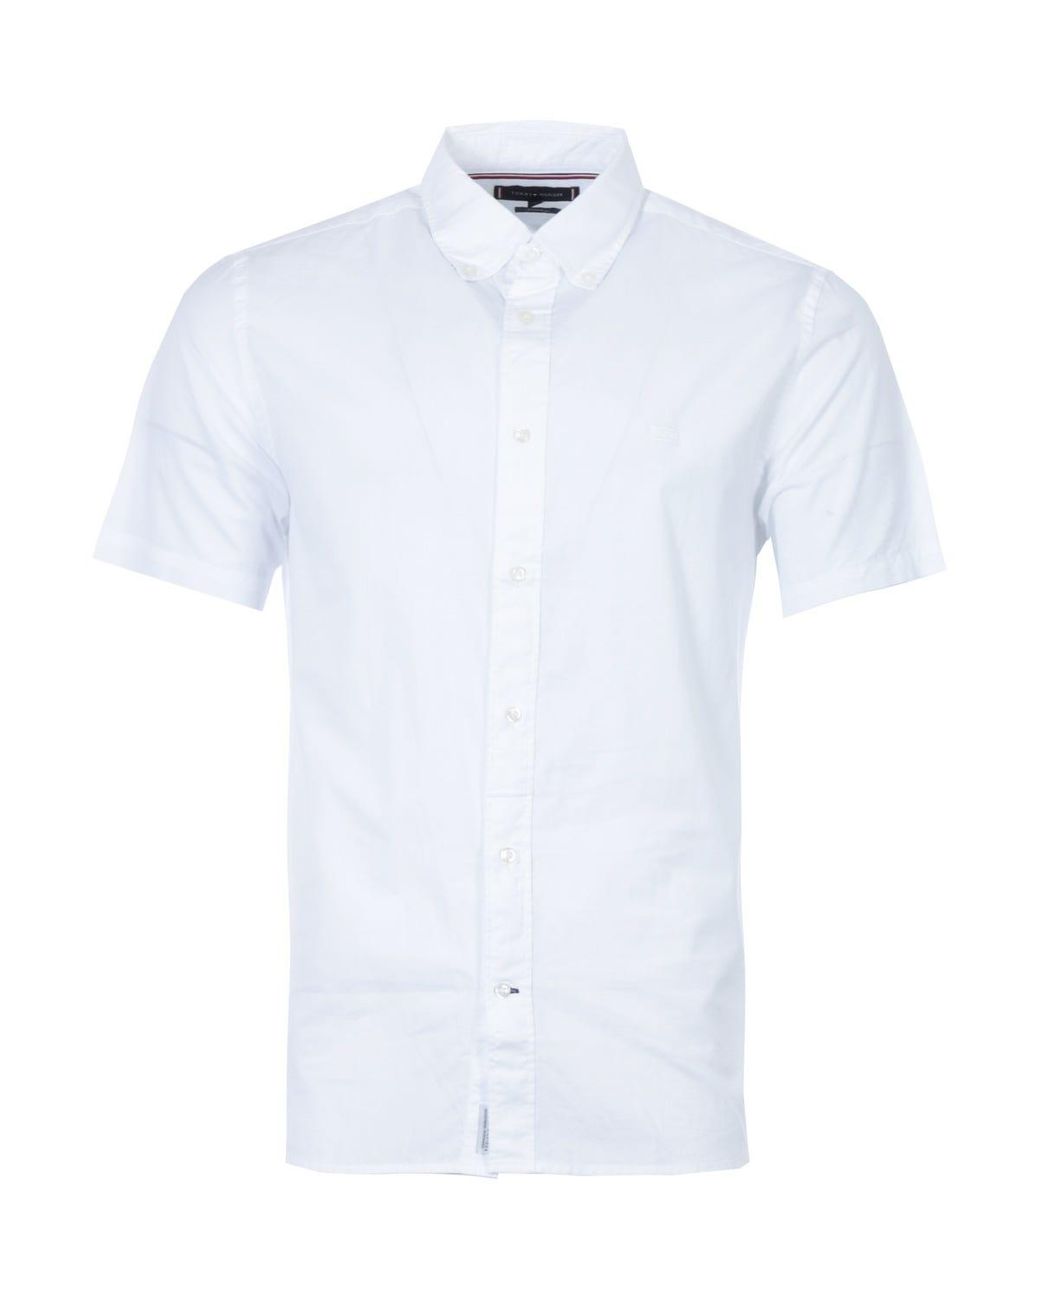 tommy hilfiger  white short sleeve shirt XXL